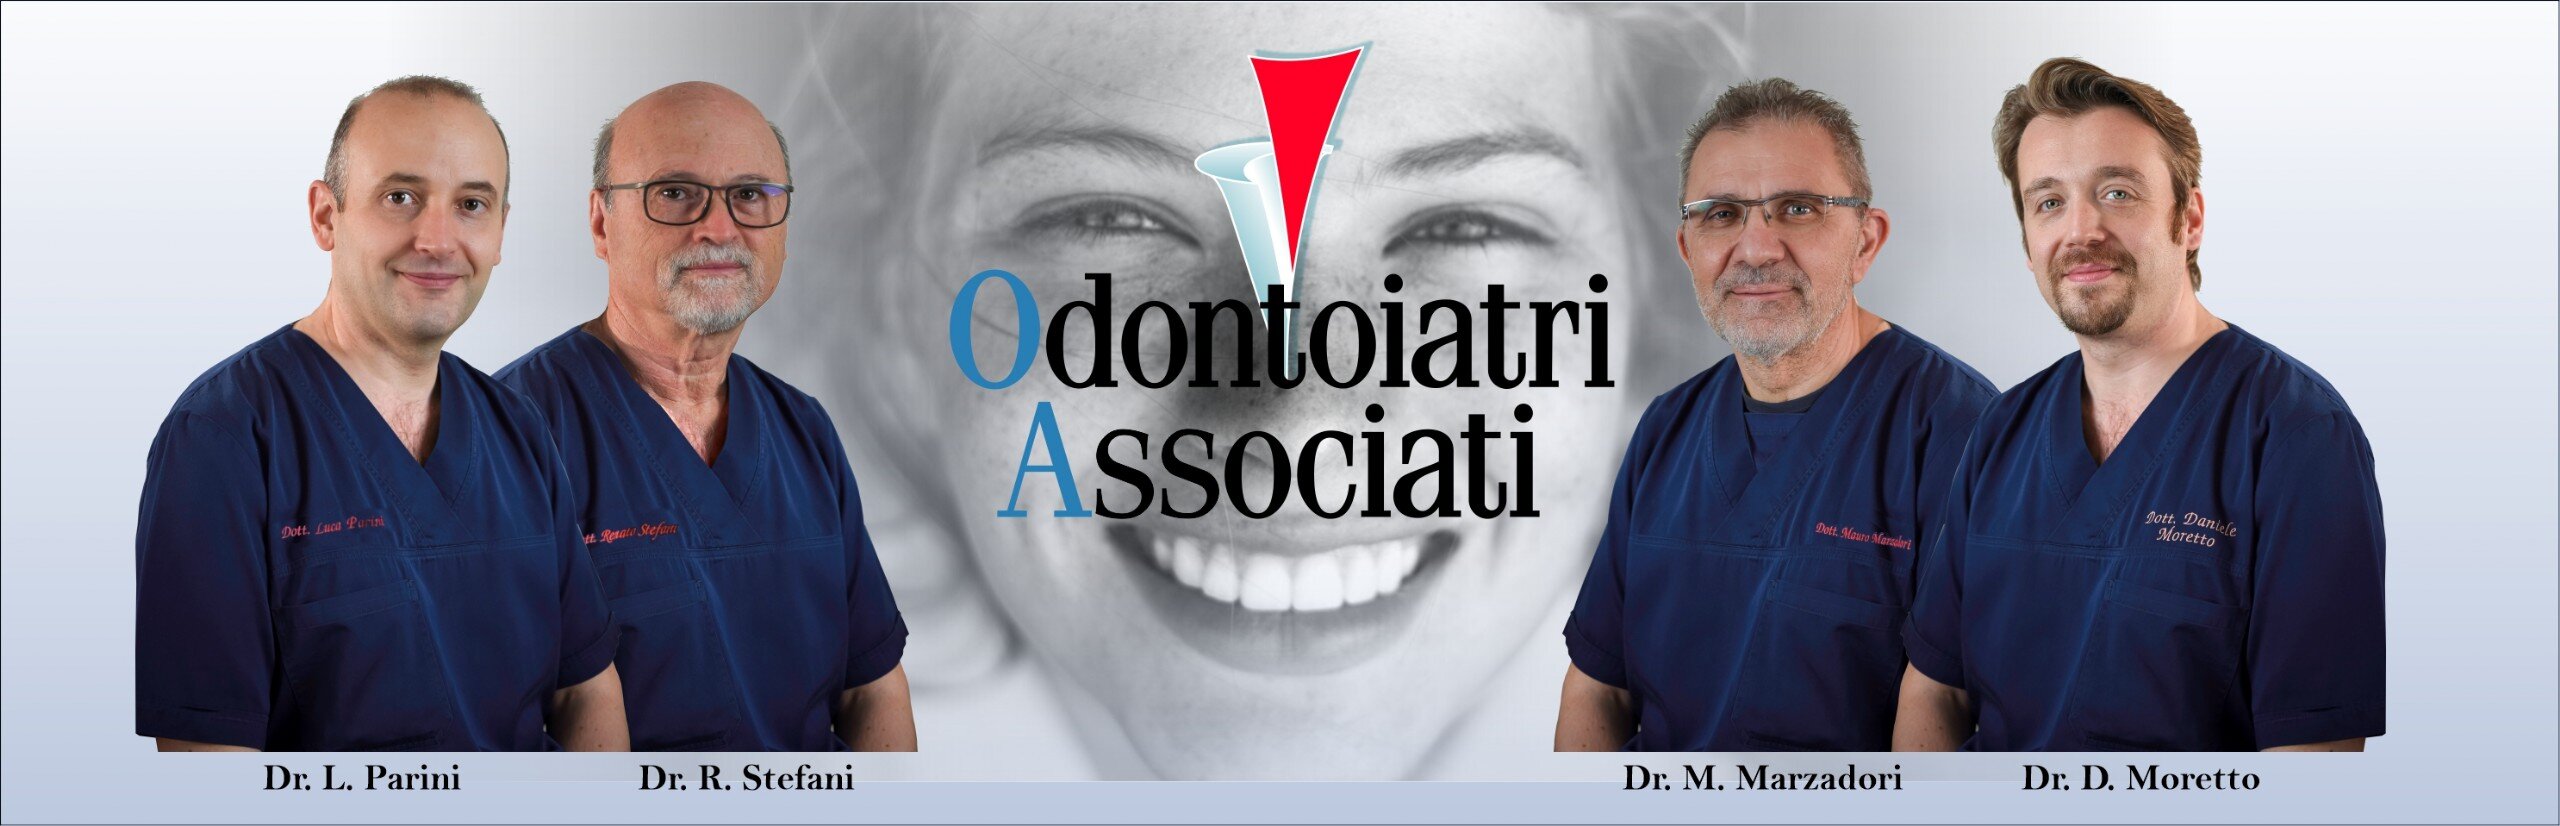 Foto dei medici titolari di Odontoiatri associati